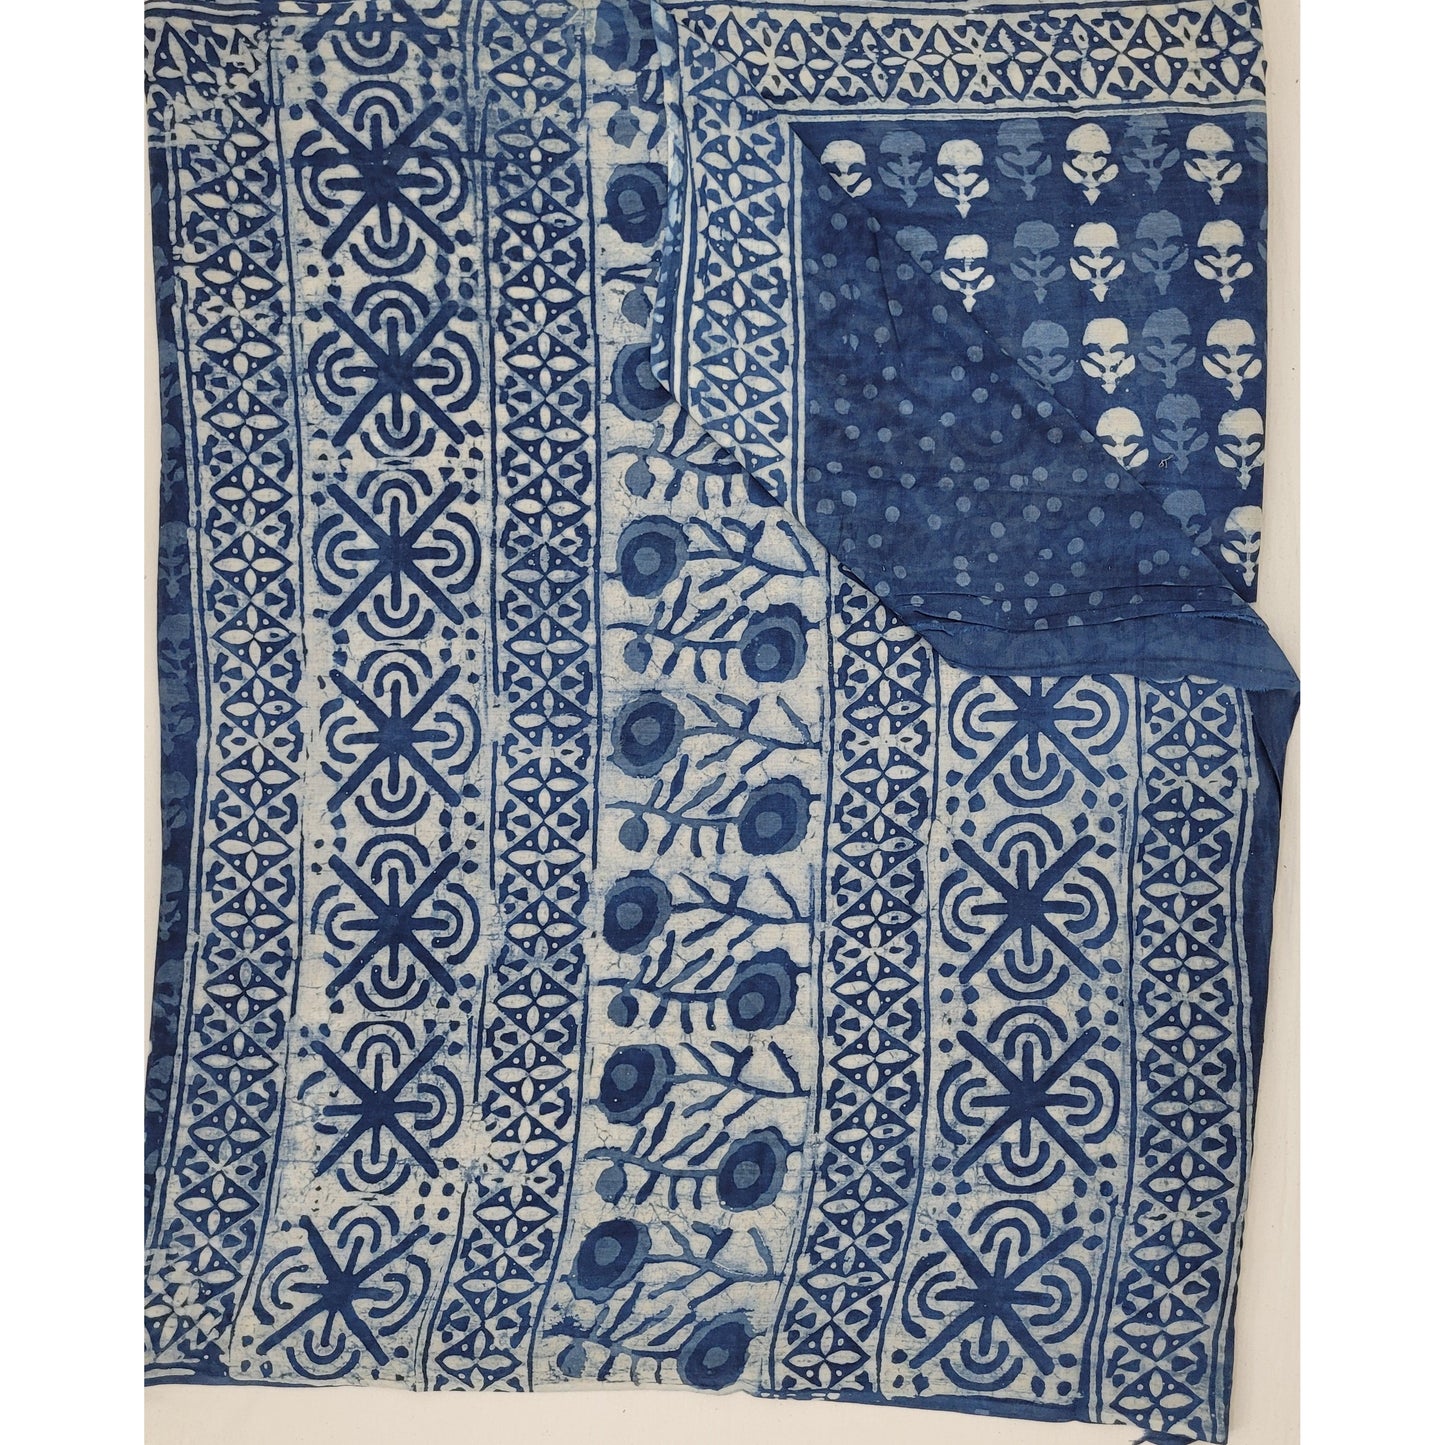 Hand Block Printed Bagru mul mul cotton saree with printed blouse - Vinshika